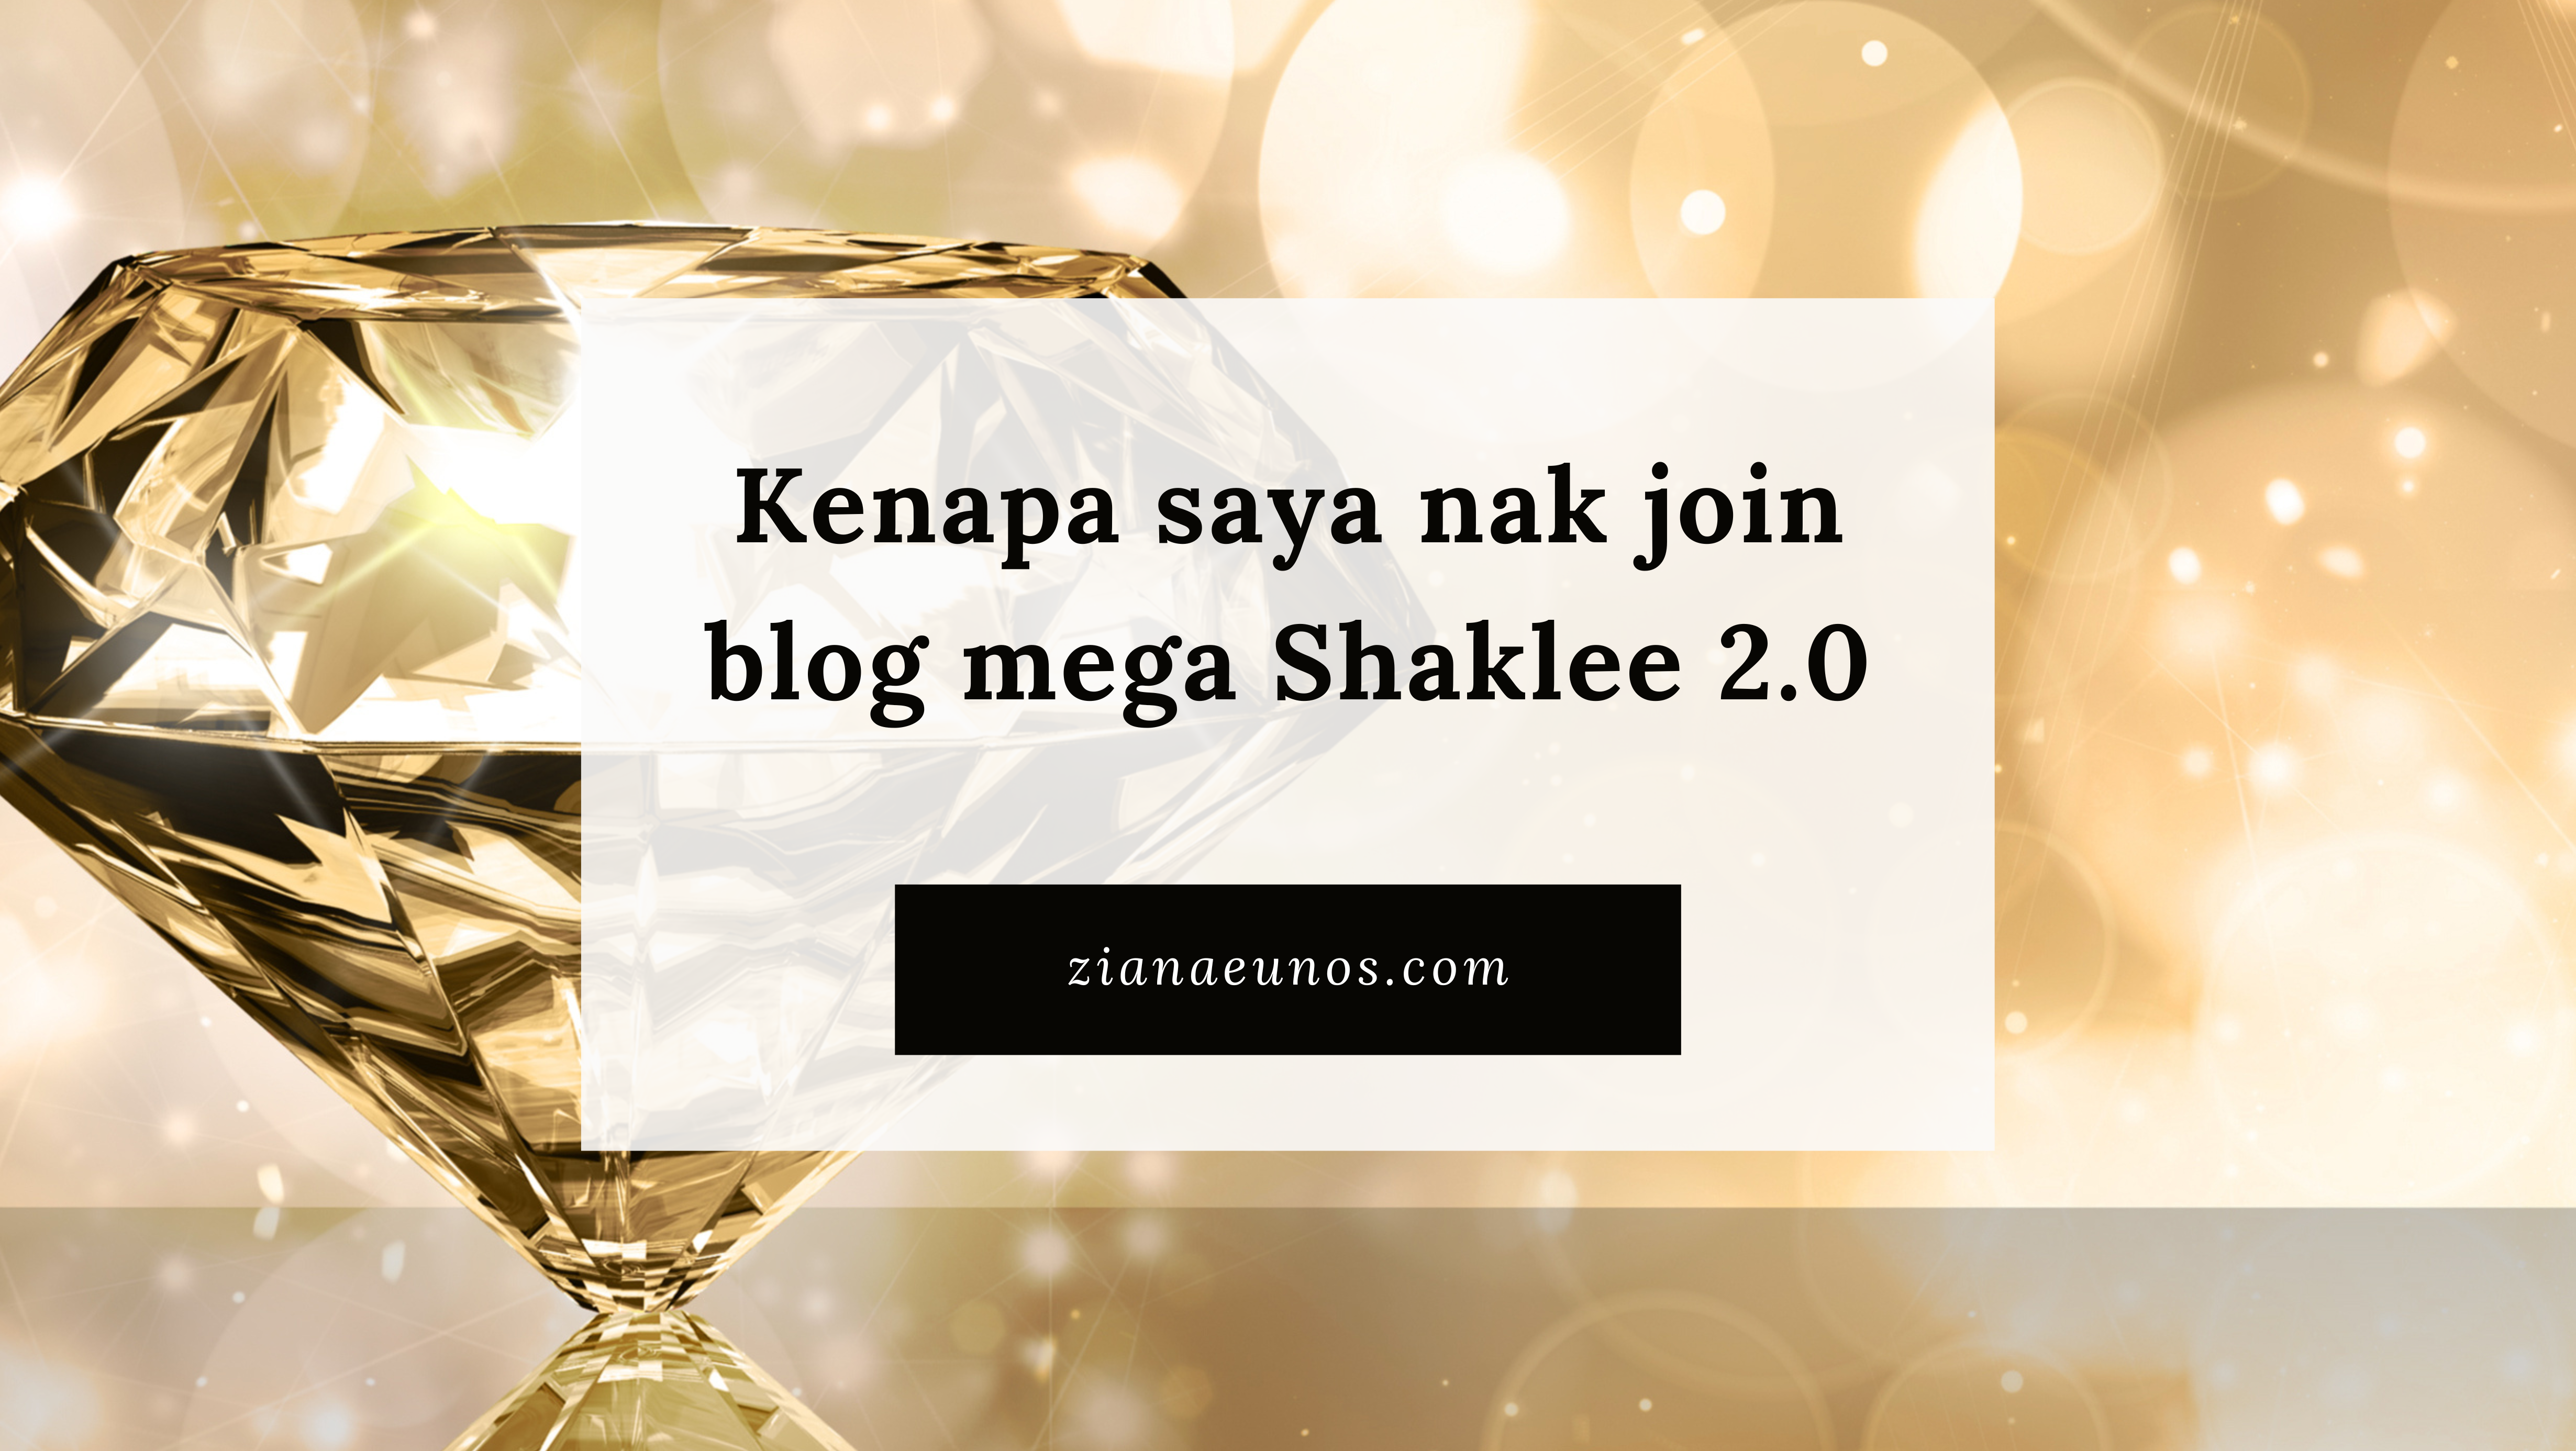 Kenapa saya nak join blogmegashaklee 2.0